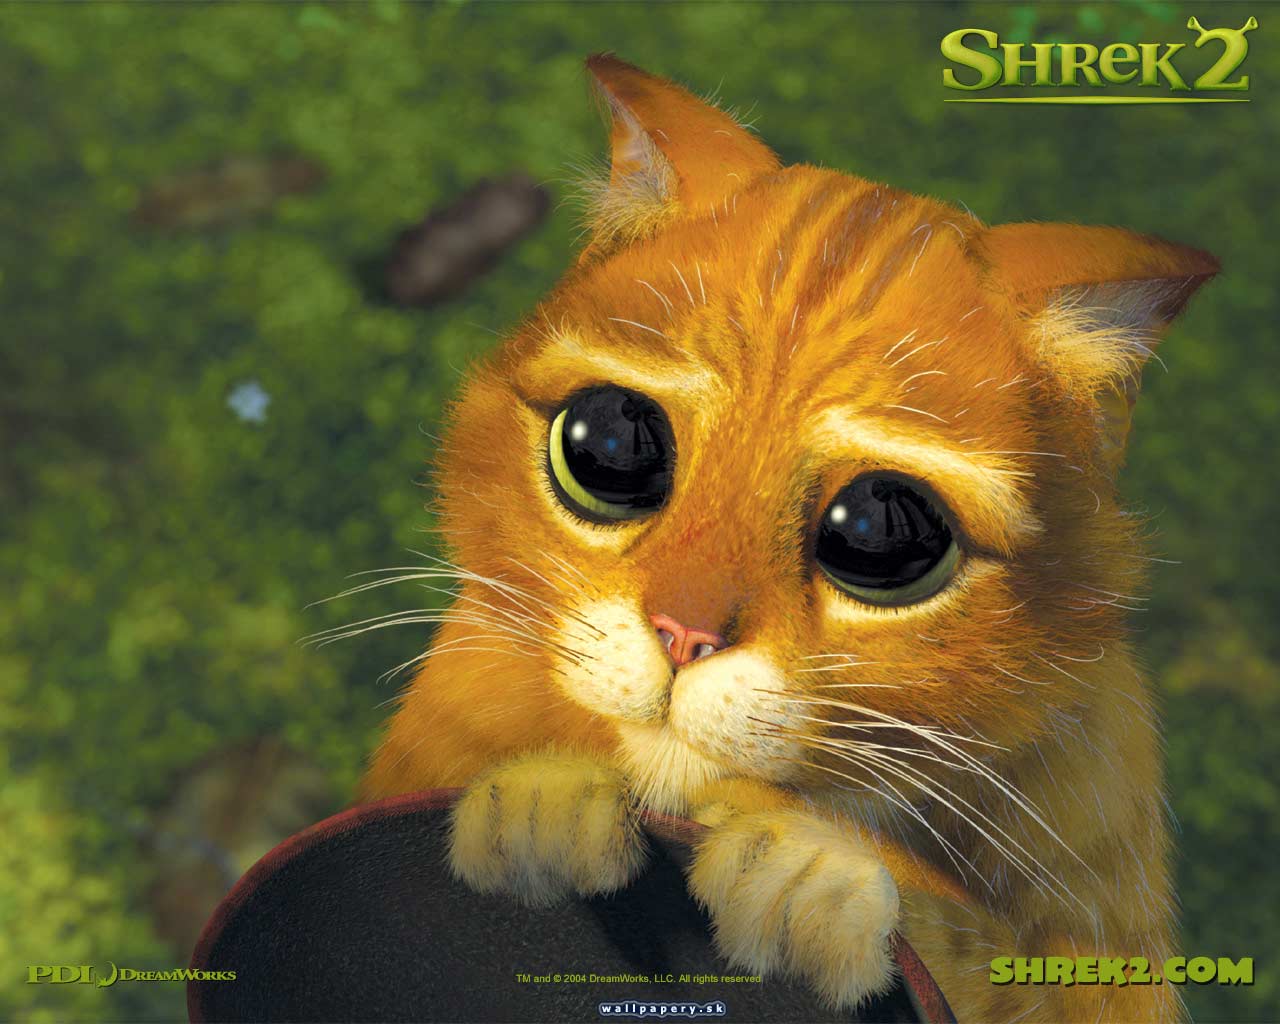 Shrek 2: The Game - wallpaper 2